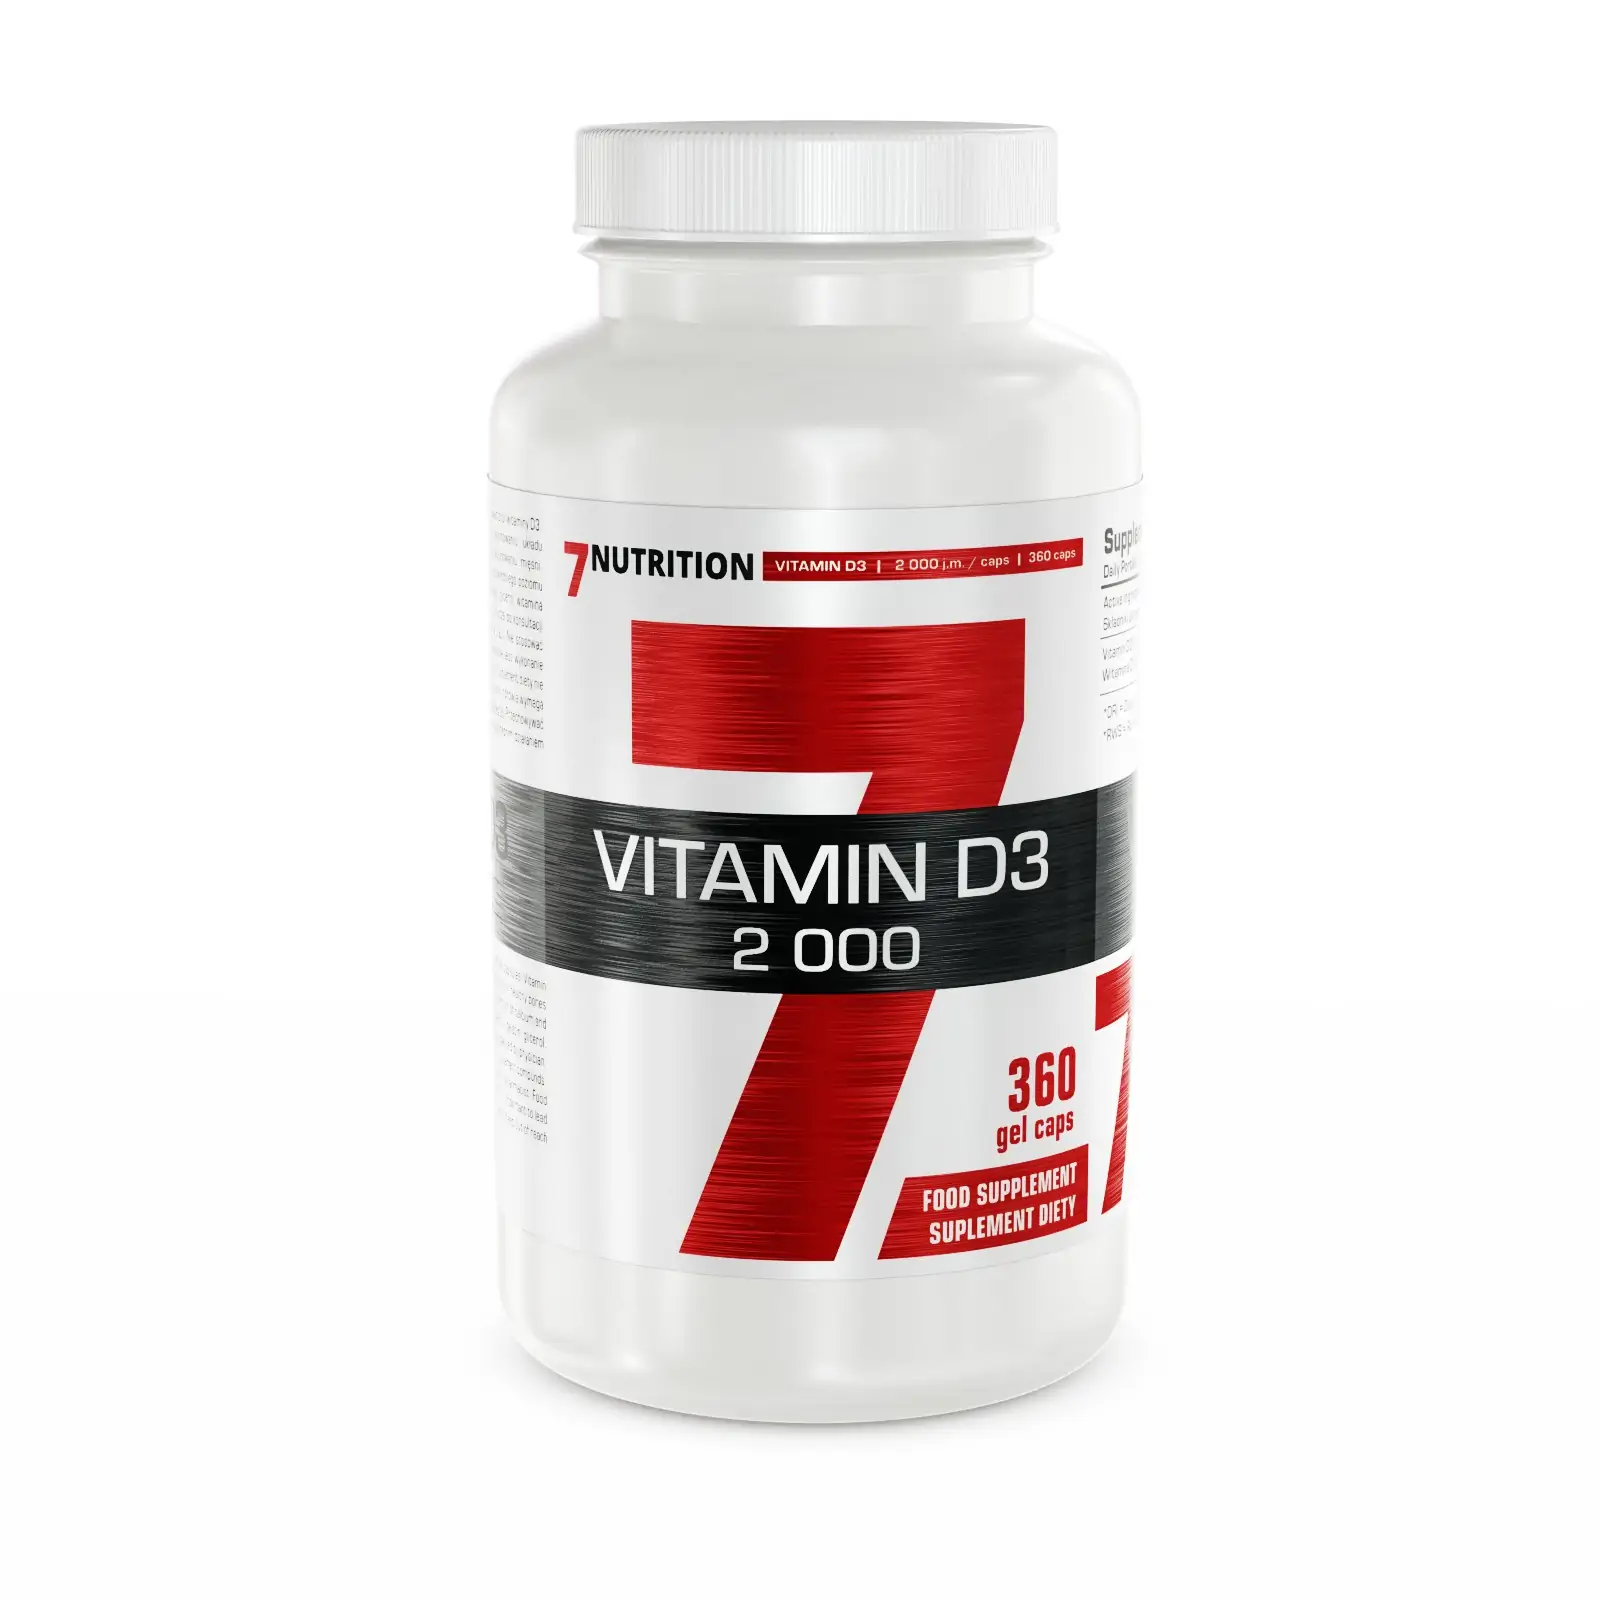 7Nutrition Vitamin D3 2000